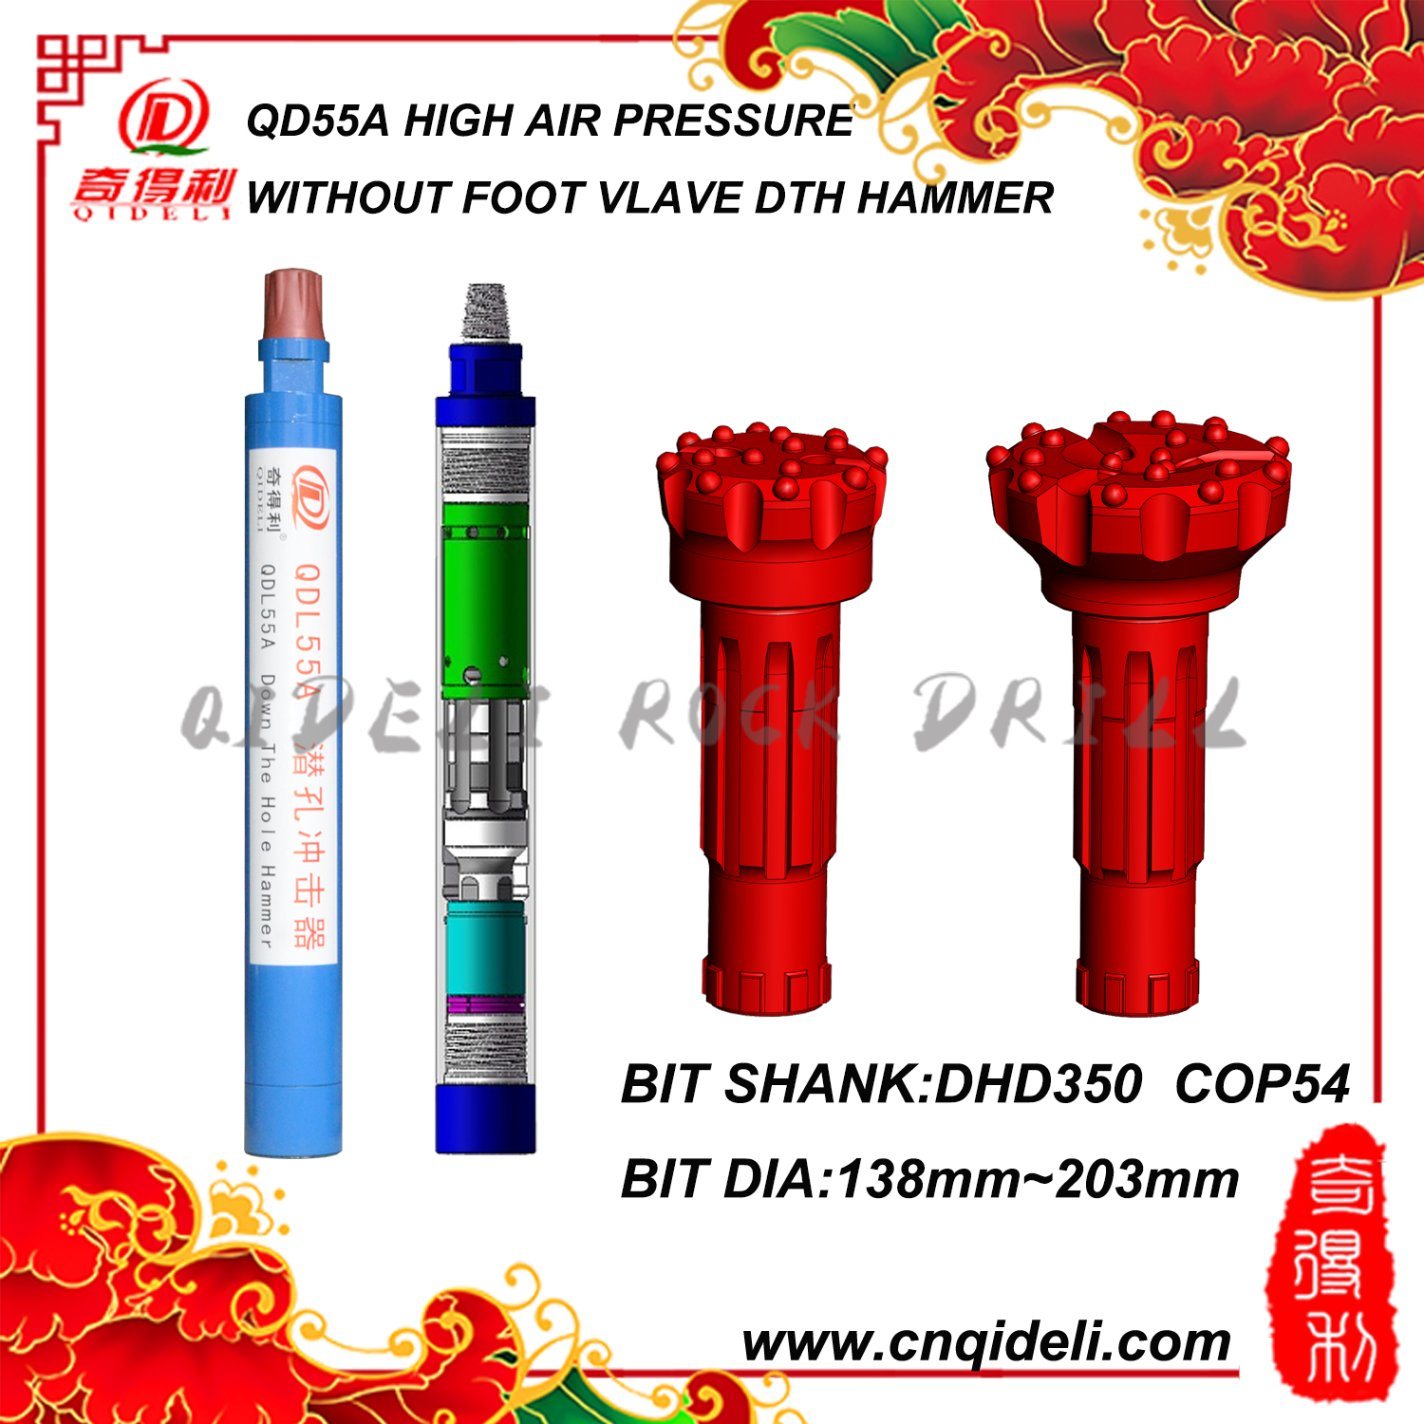 High Air Pressure DTH Hammer (QHD55)